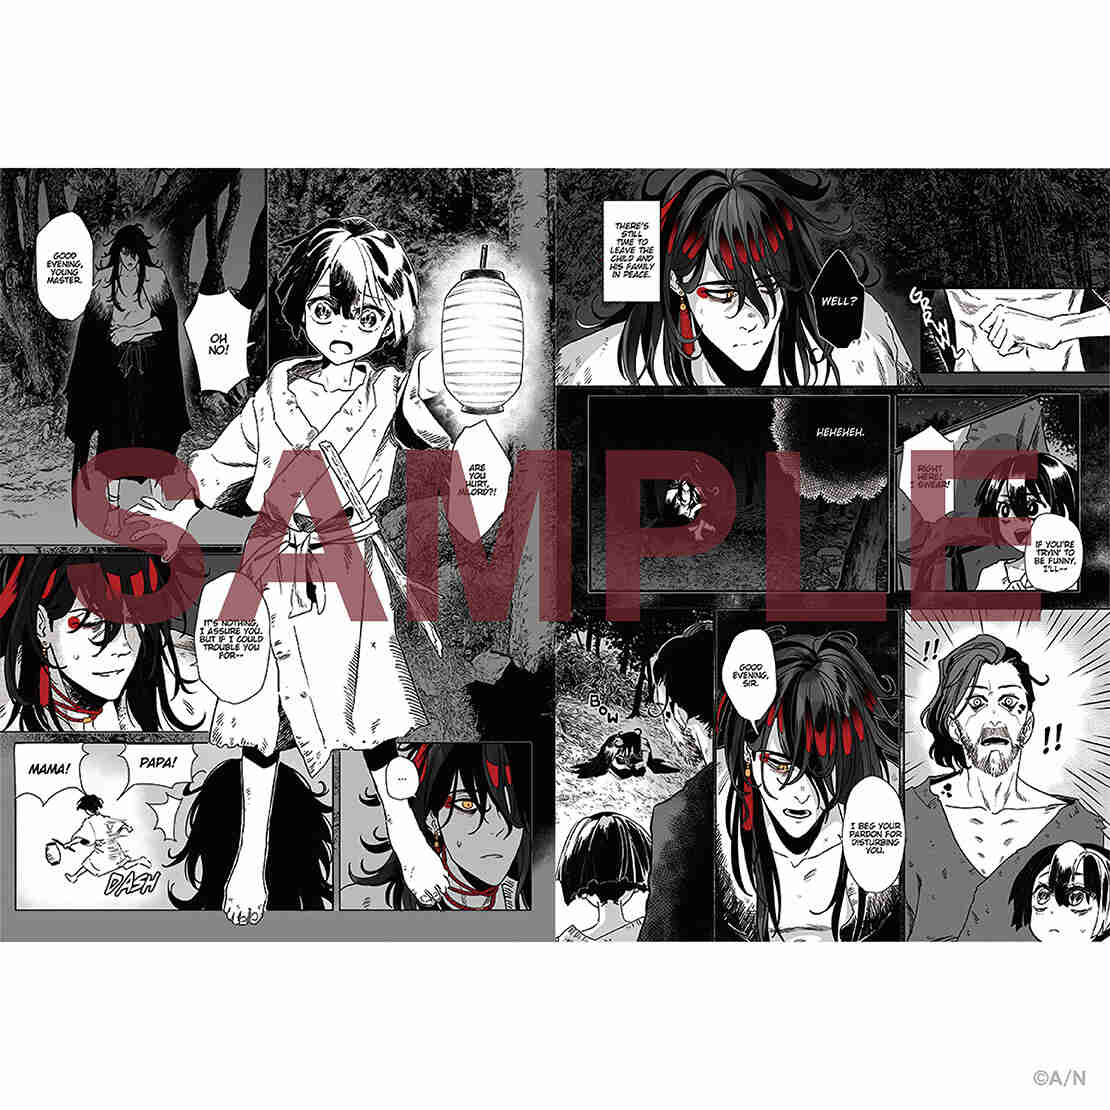 「預訂」Nijisanji【Vox Akuma:The Demon Hungers】Graphic Novel 小說/ 海報